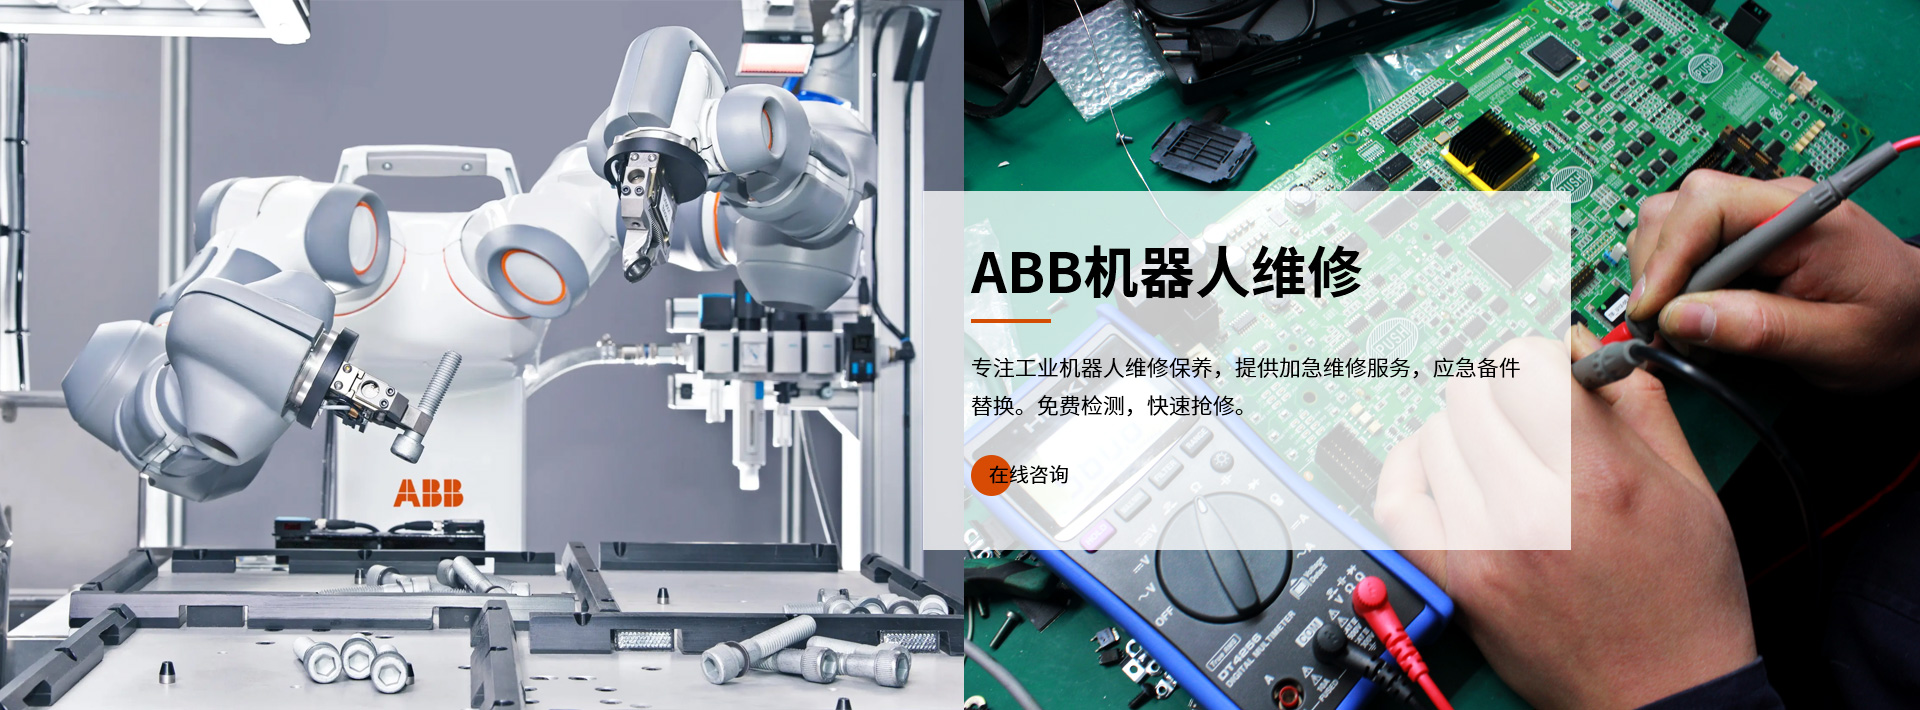 ABB機器人維修